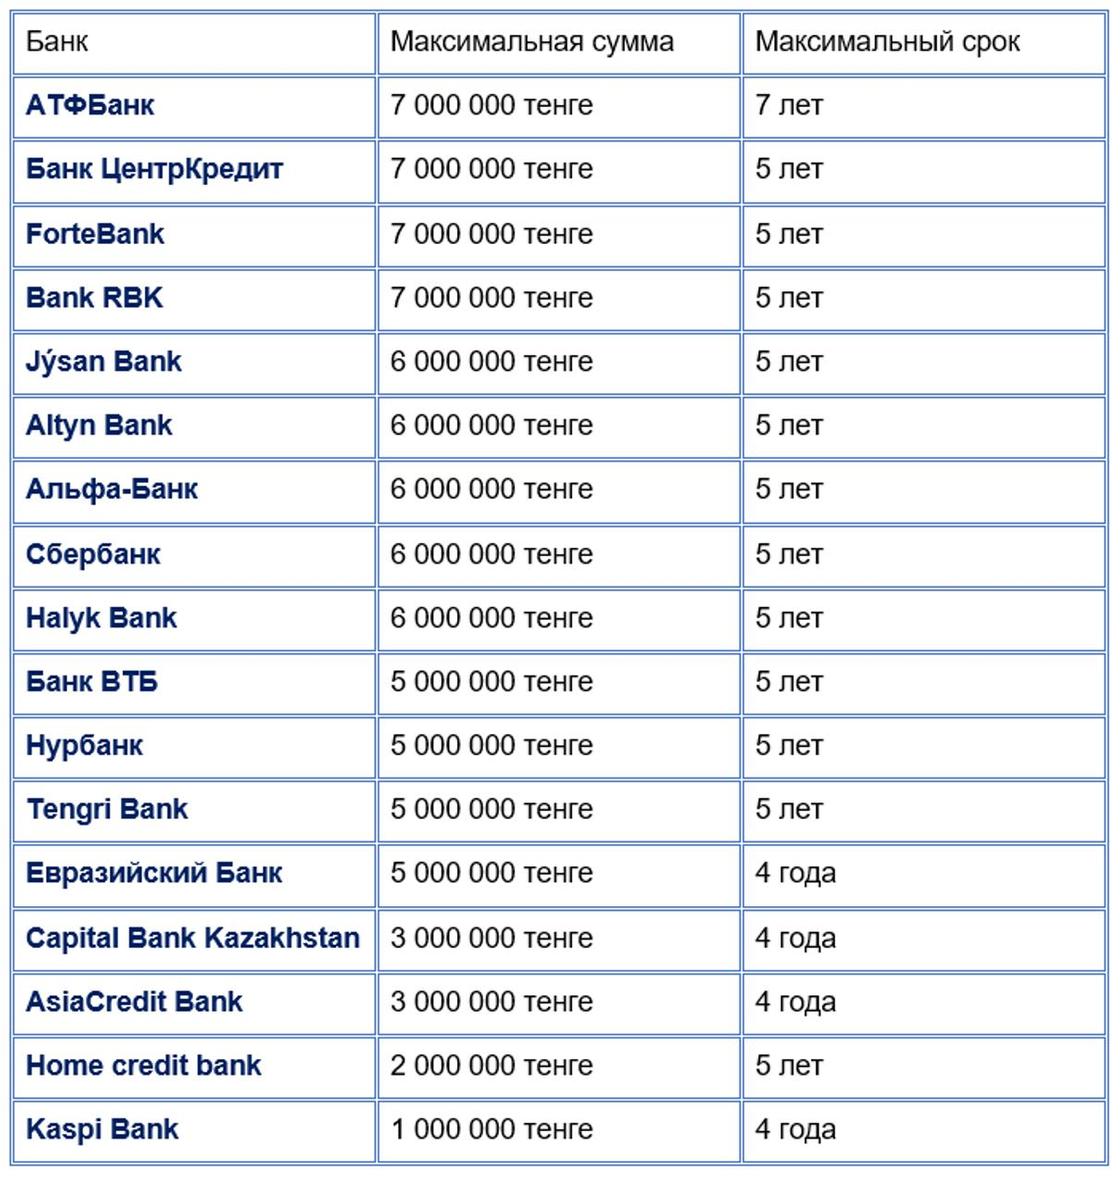 Какую максимальную сумму можно взять без залога в казахстанских банках